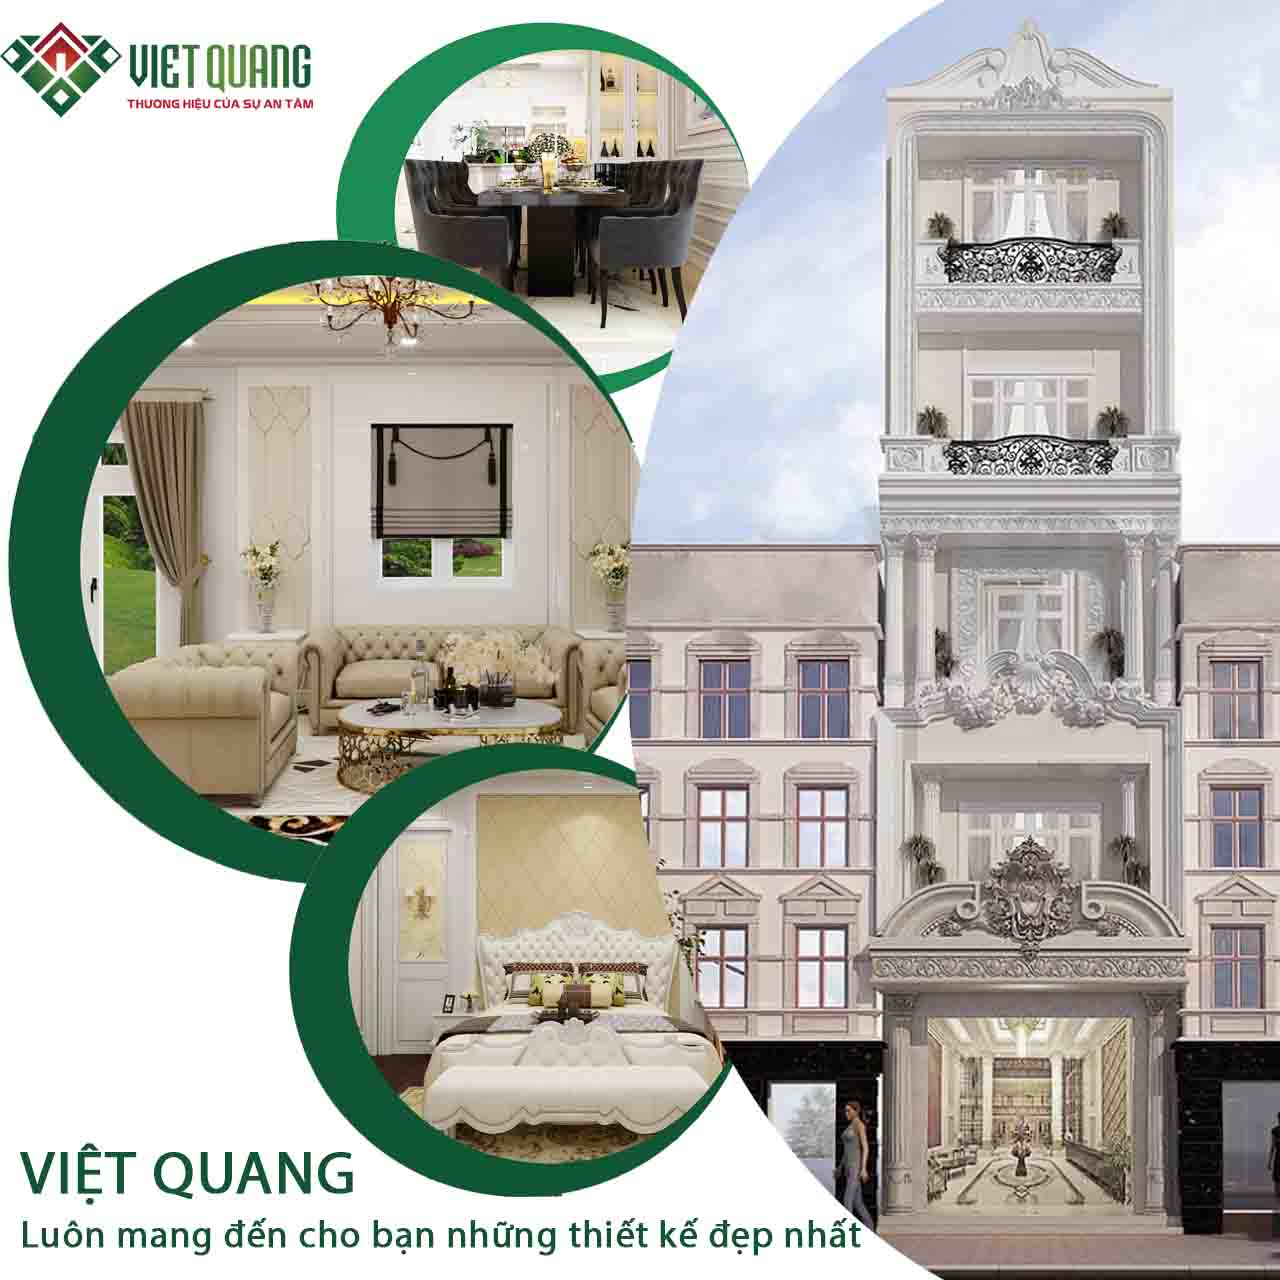 Việt Quang Group đơn vị thiết kế xây dựng nhà ở chuyên nghiệp, uy tín